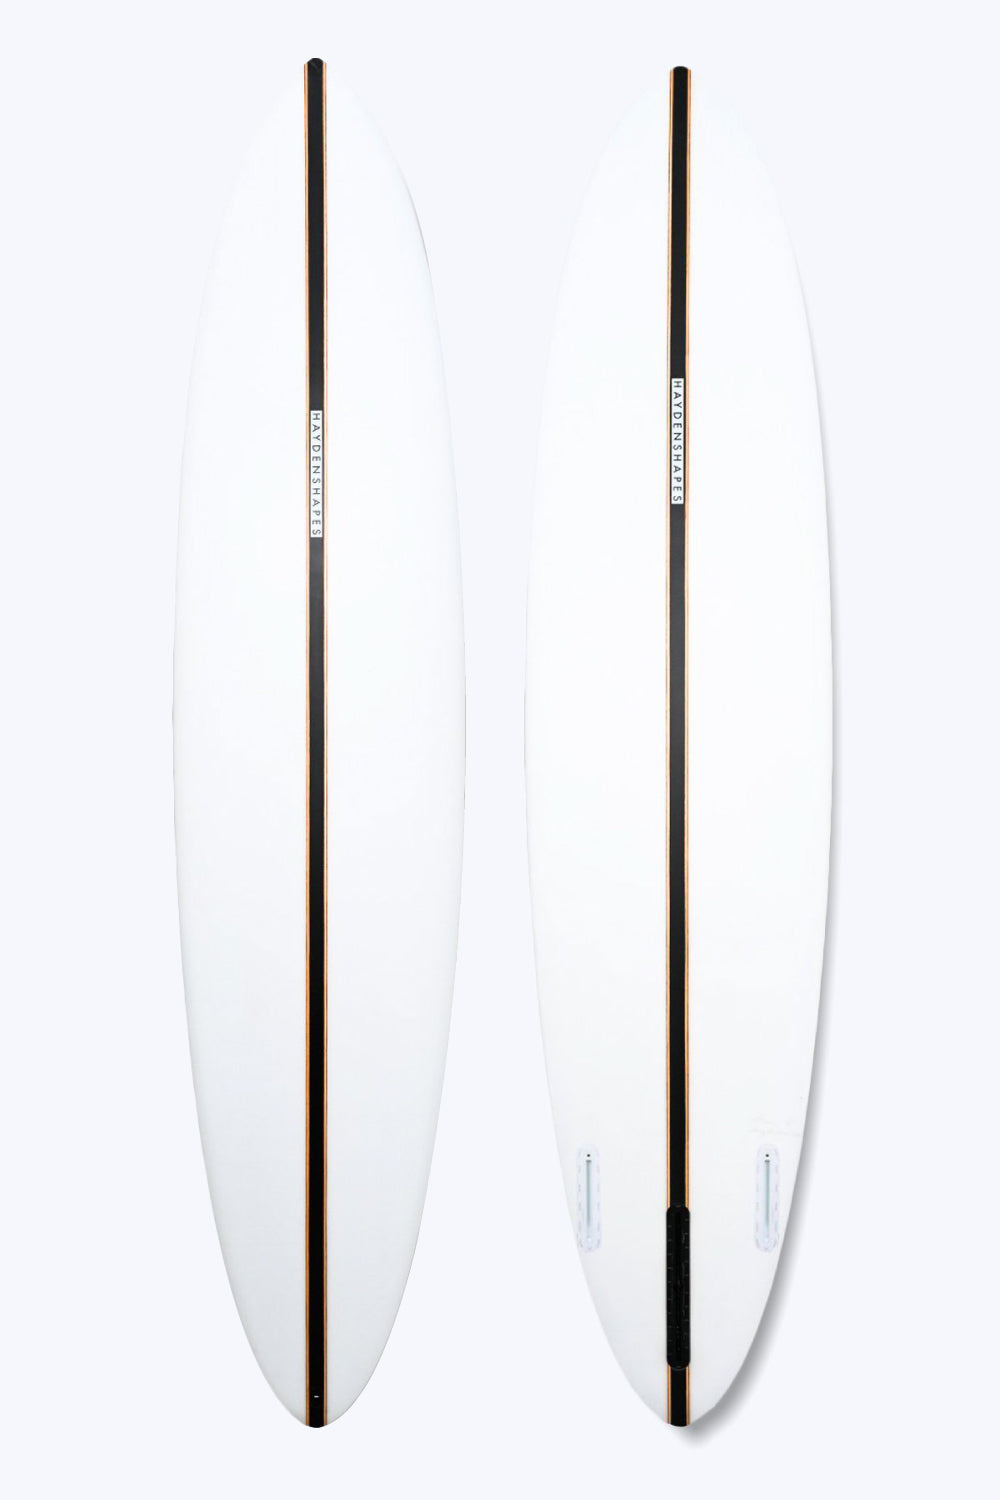 Hayden Shapes Mid Length Glider Surfboard